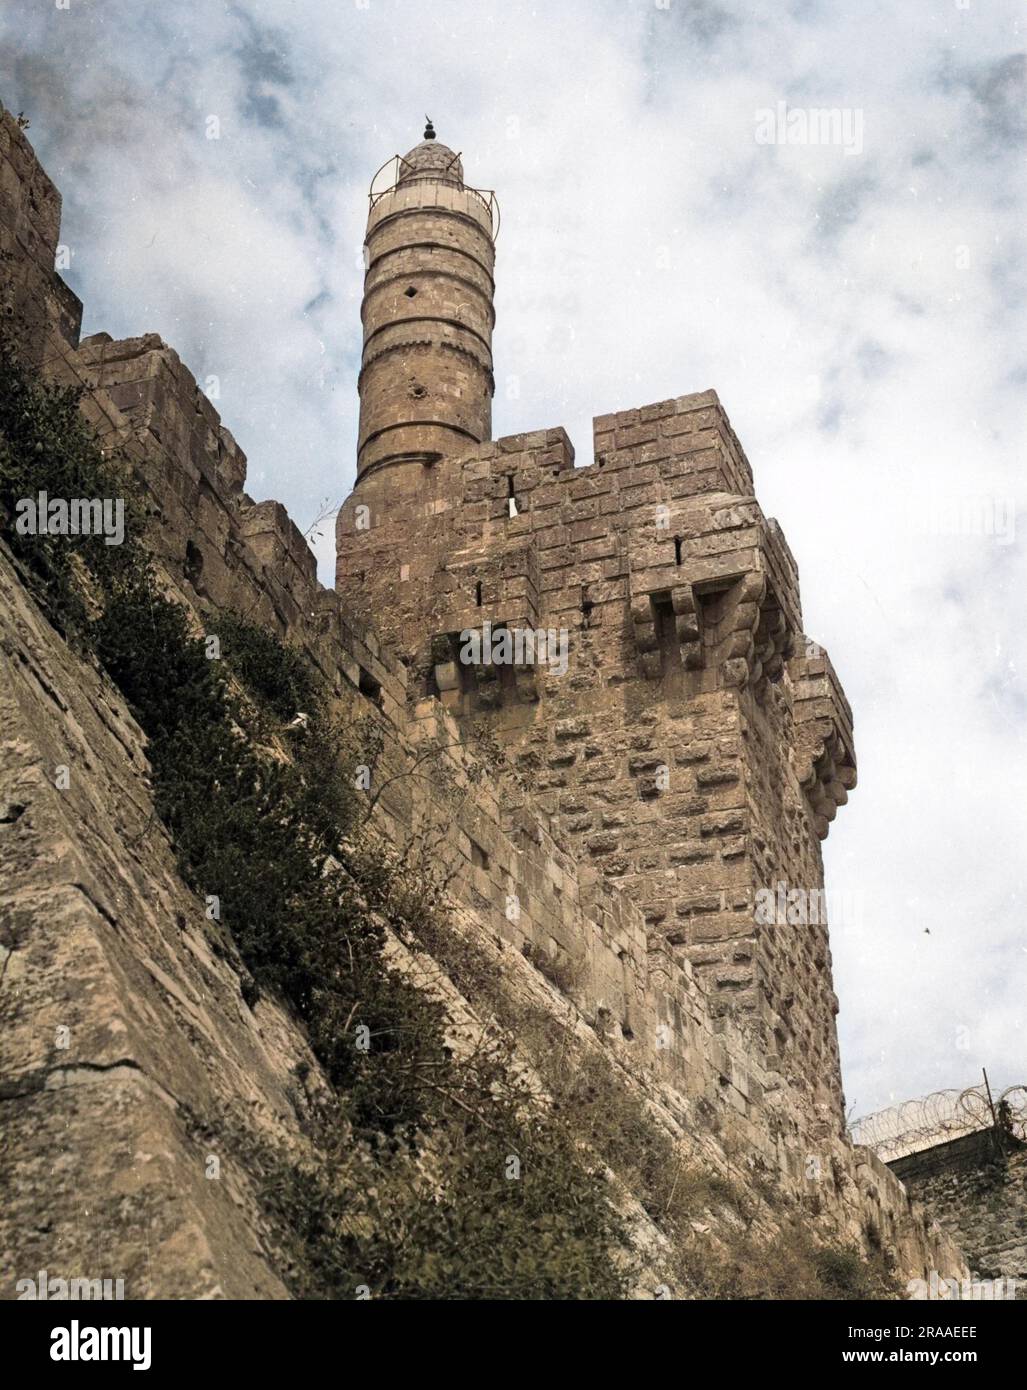 La torre de David, Jerusalén, Israel. El edificio existente es principalmente una fortaleza medieval, pero partes de ella fueron construidas por los hasmondeos (siglo I dC) y el rey Herodes (37-34 aC). Fecha: BCE y Medieval Foto de stock